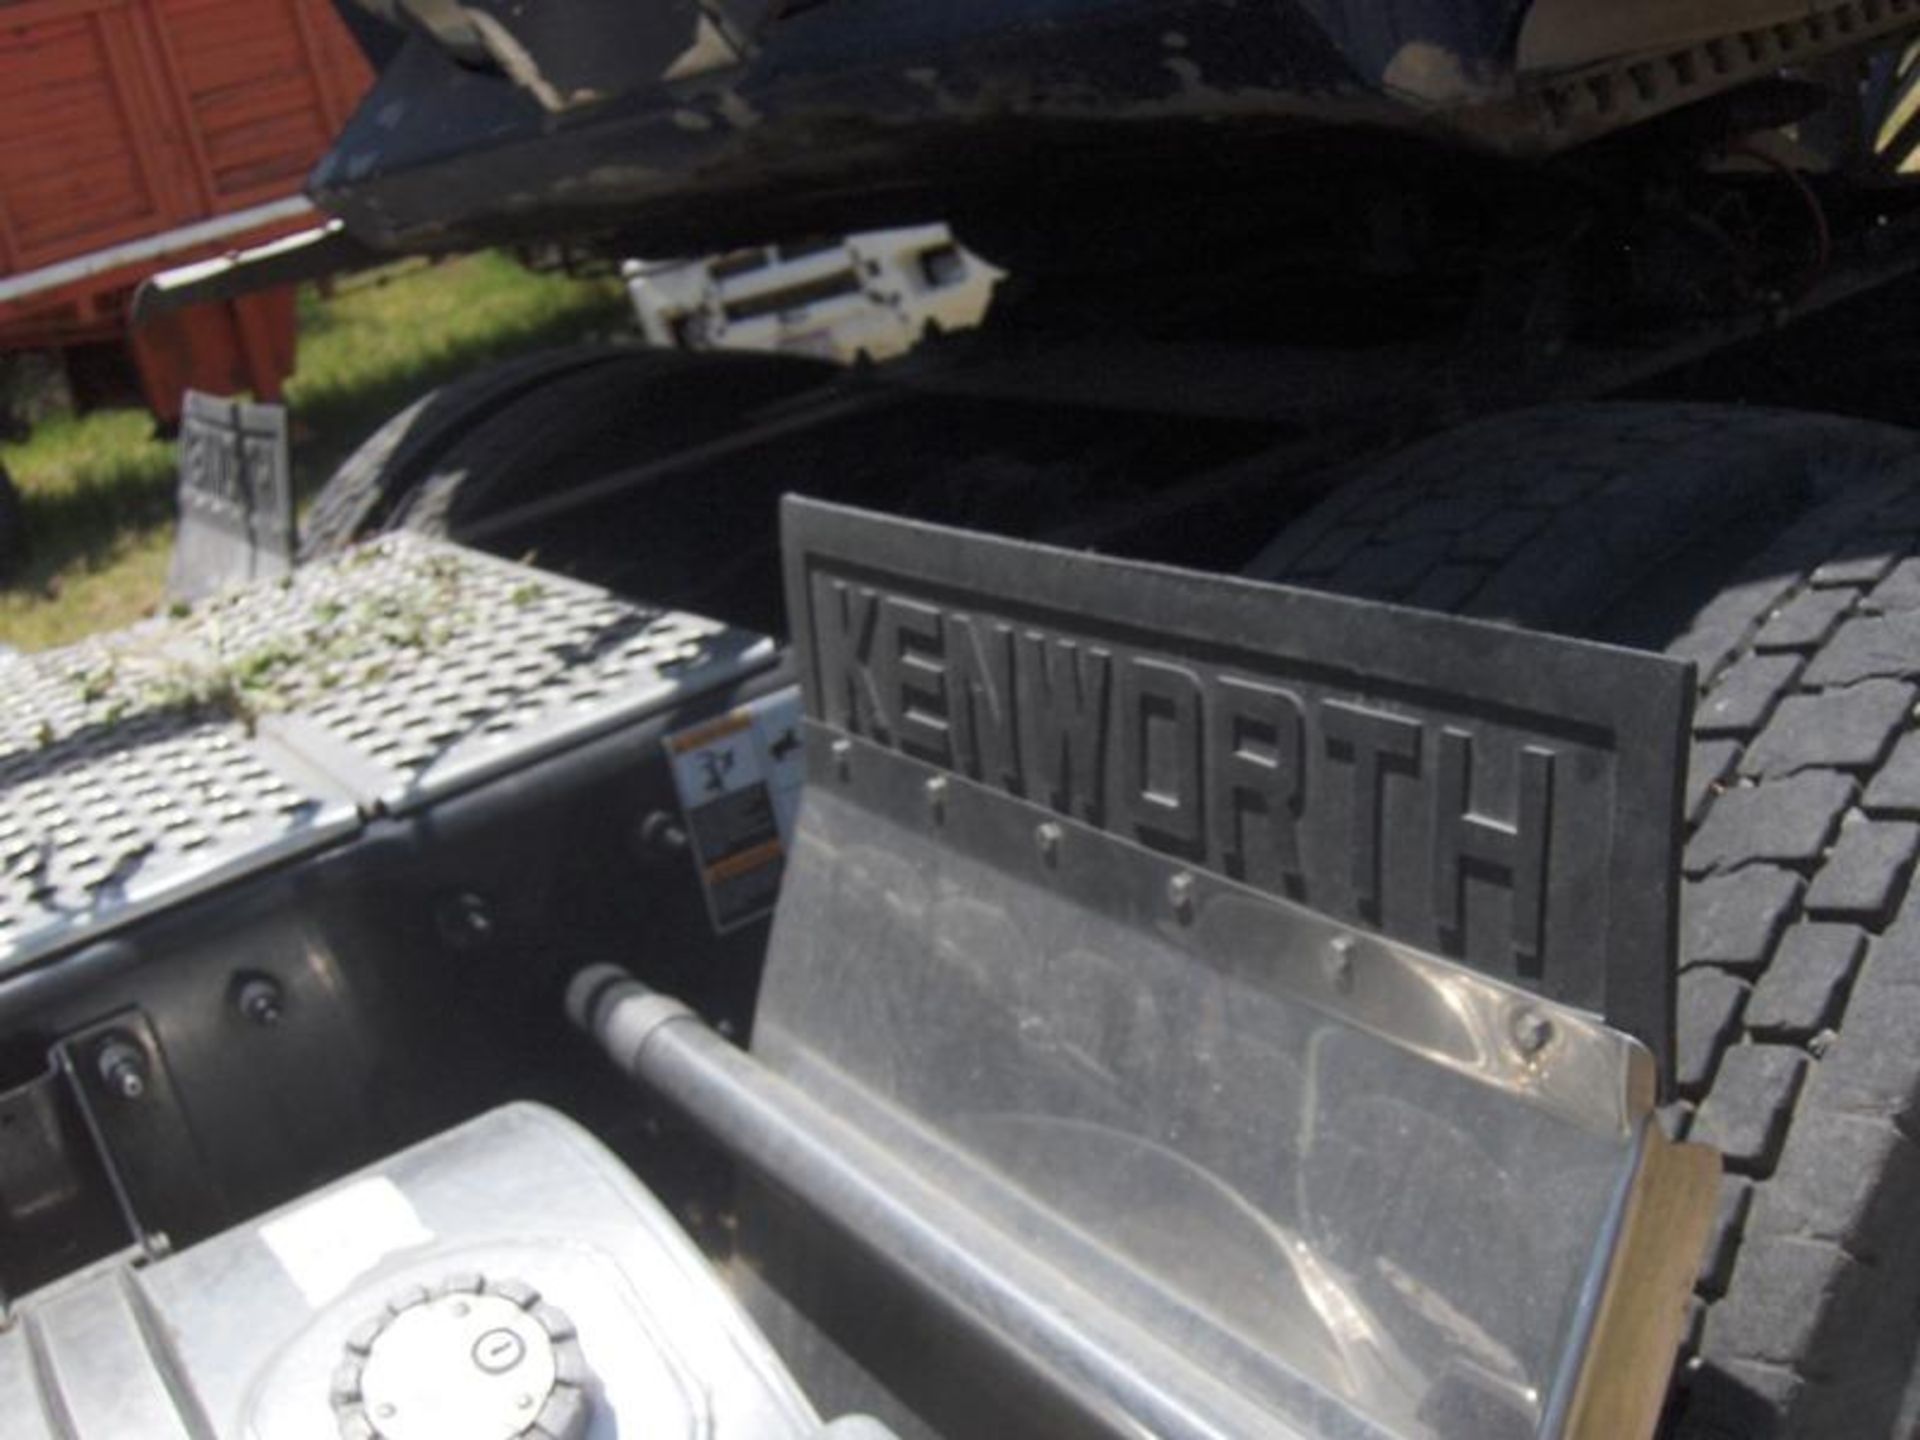 Vehículo Marca Kenworthtipo: Tracto Camion Modelo 2014 Numero Economico 790, Located In: Jalisco, - Image 6 of 19